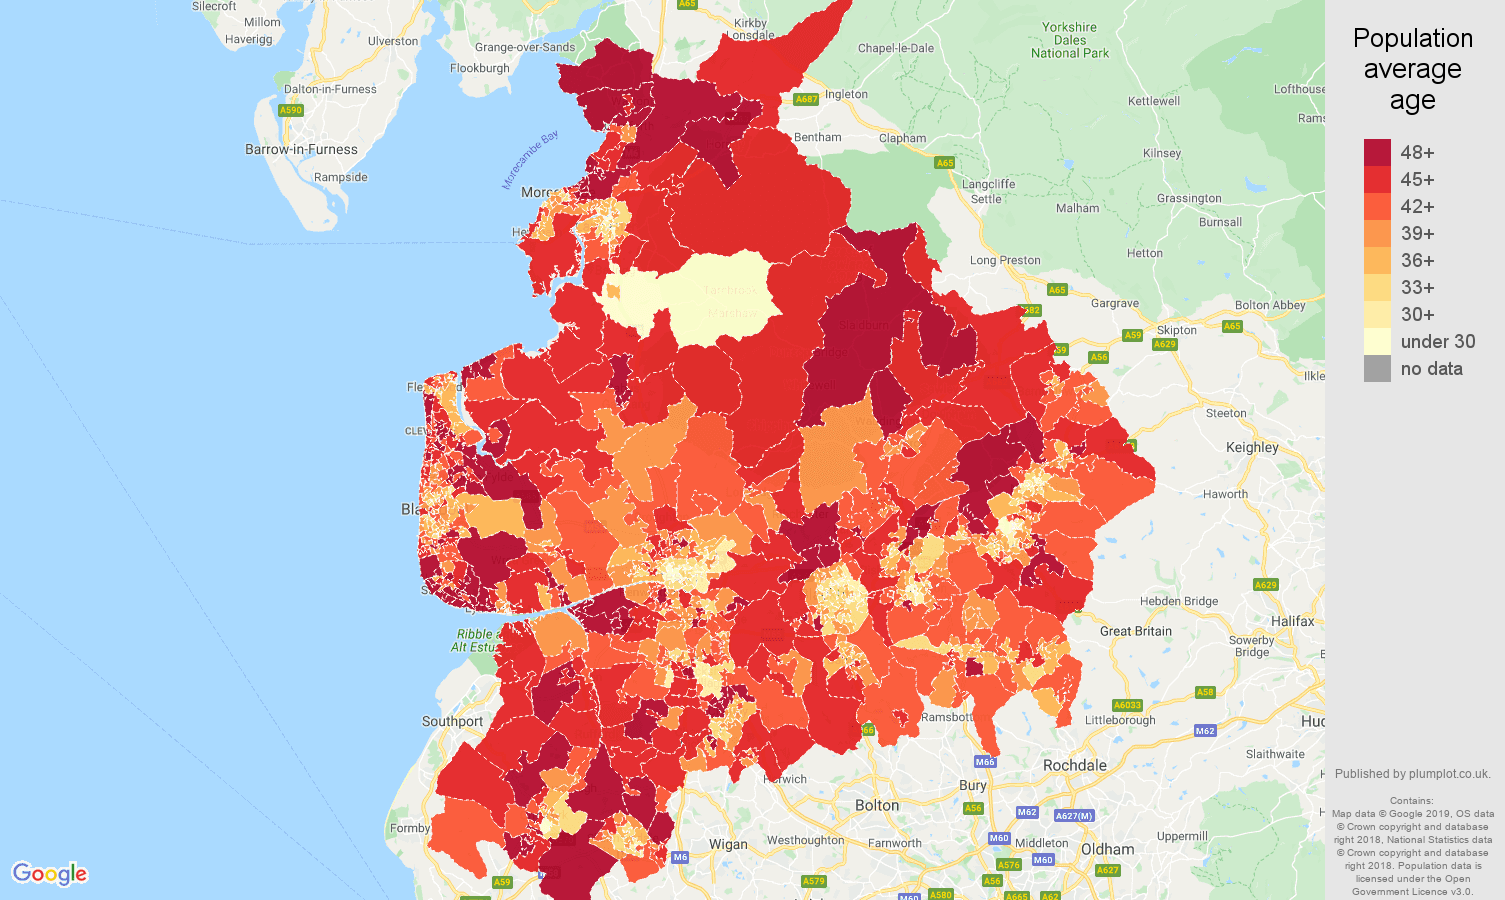 Lancashire population average age map